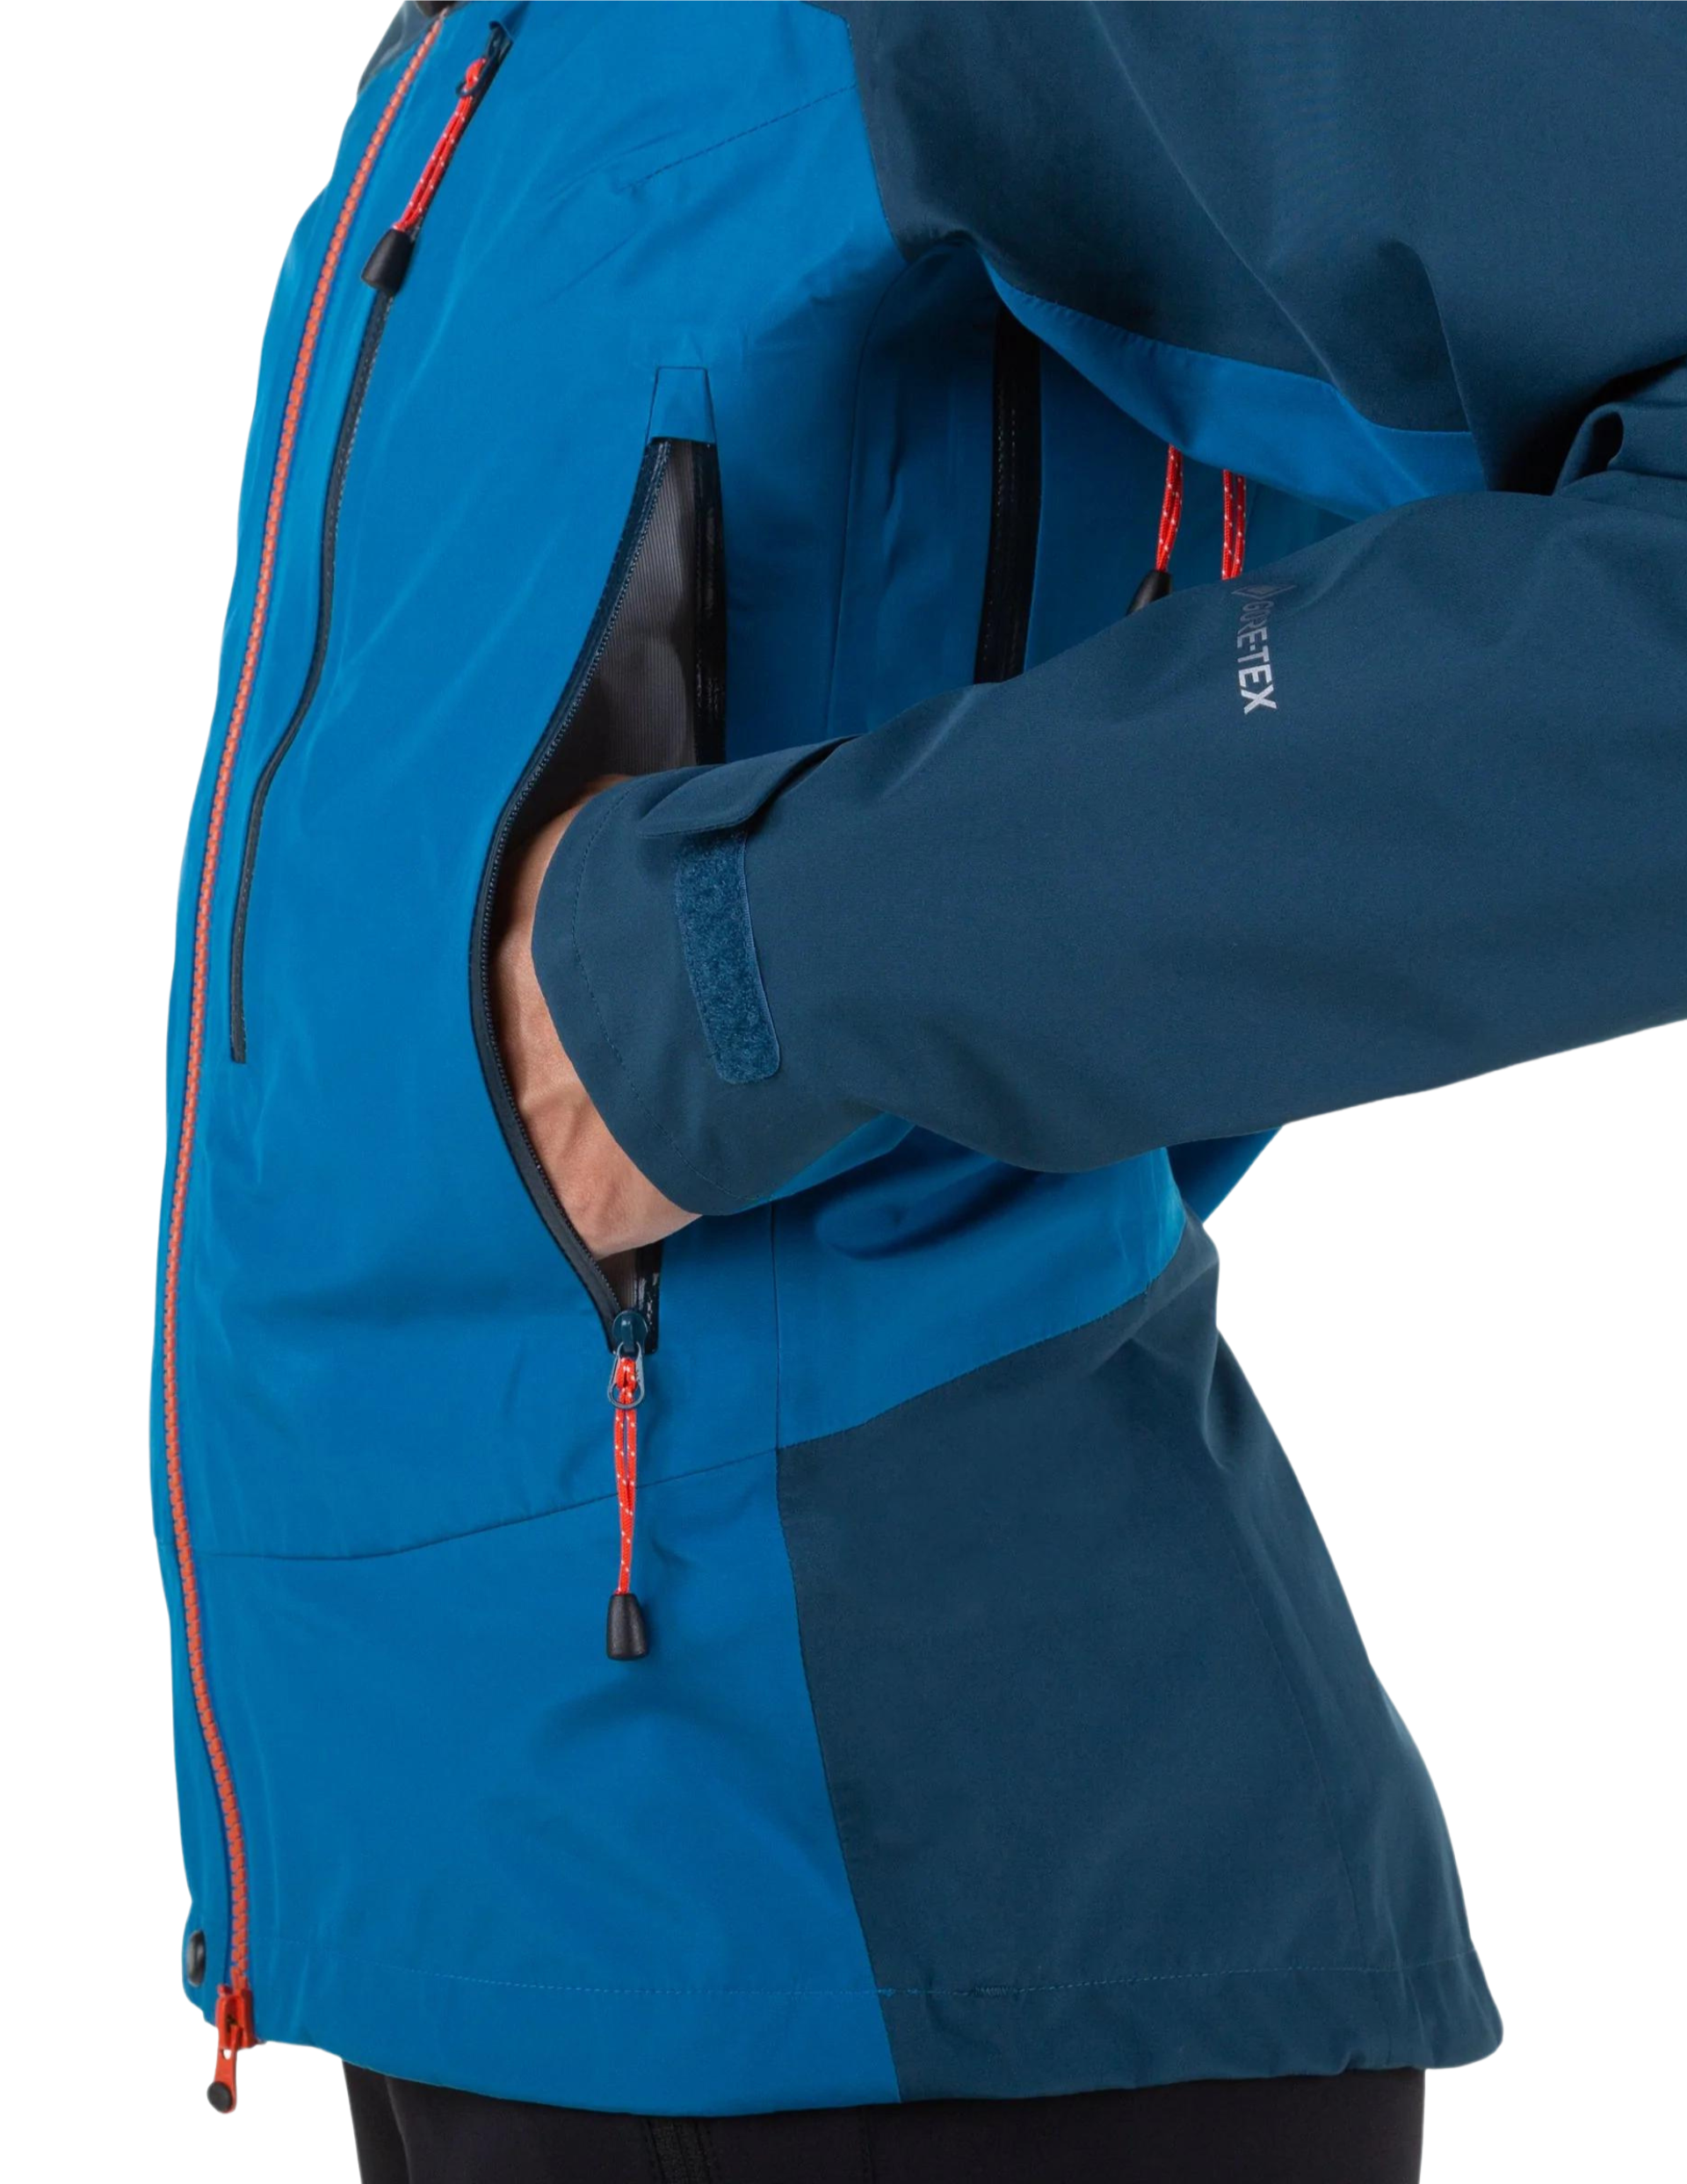 Veste imperméable Mountain Equipment Makalu : 2 grandes poches avec zips YKK